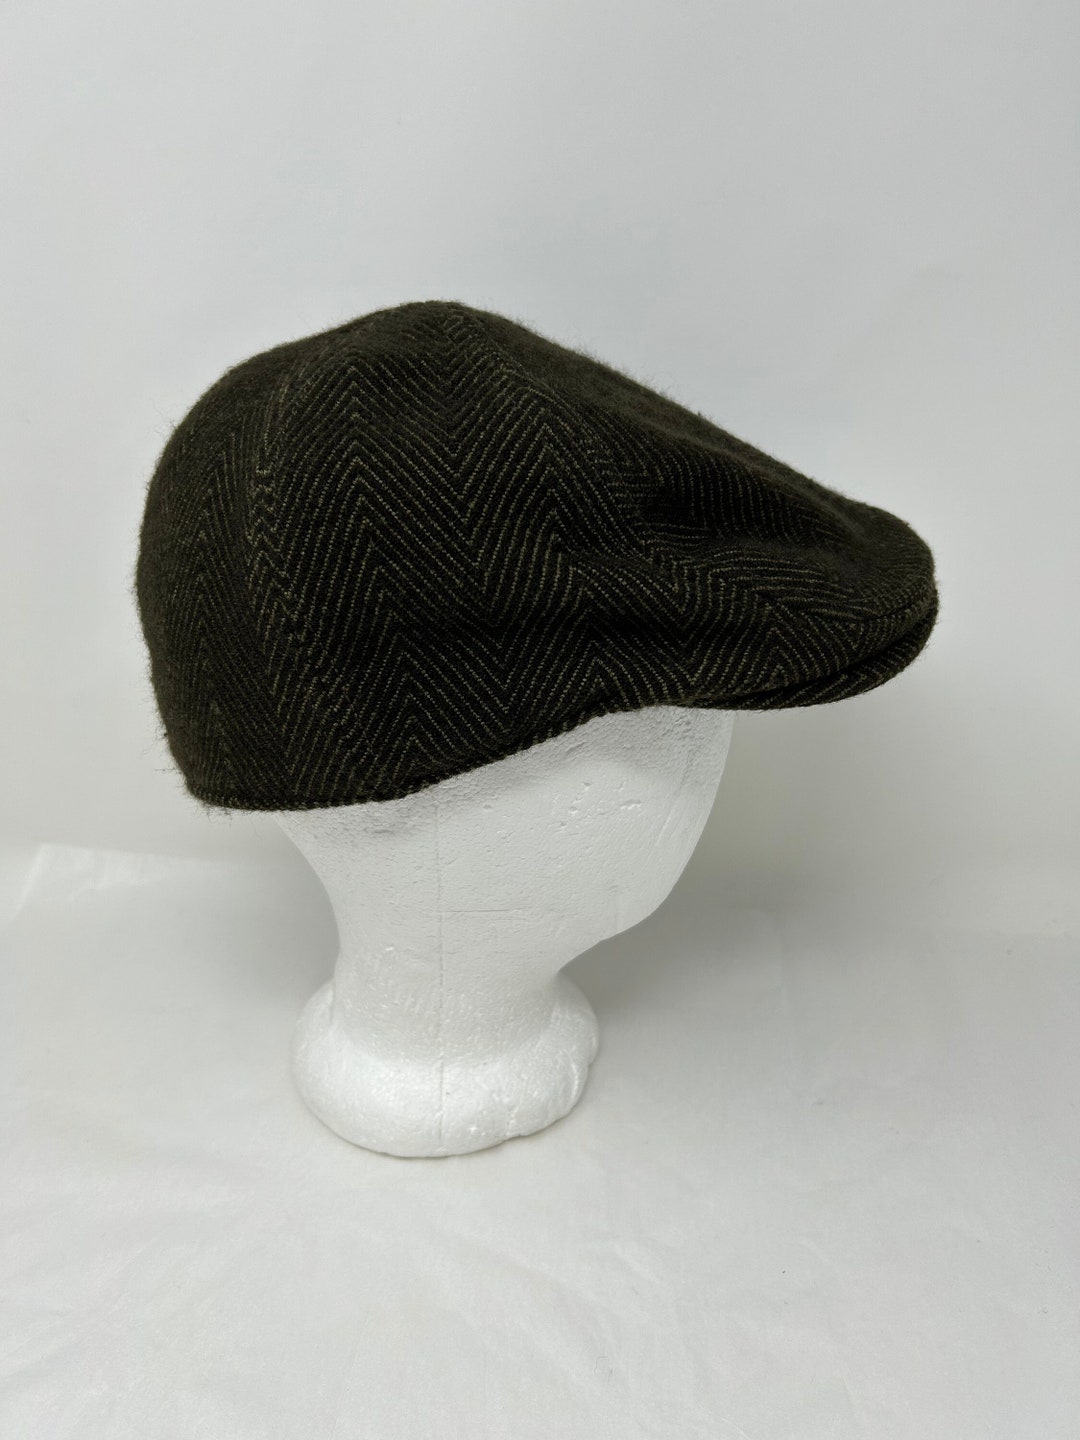 Vintage Goorin Bros Herringbone Olive Green Brown Cap Hat - Etsy